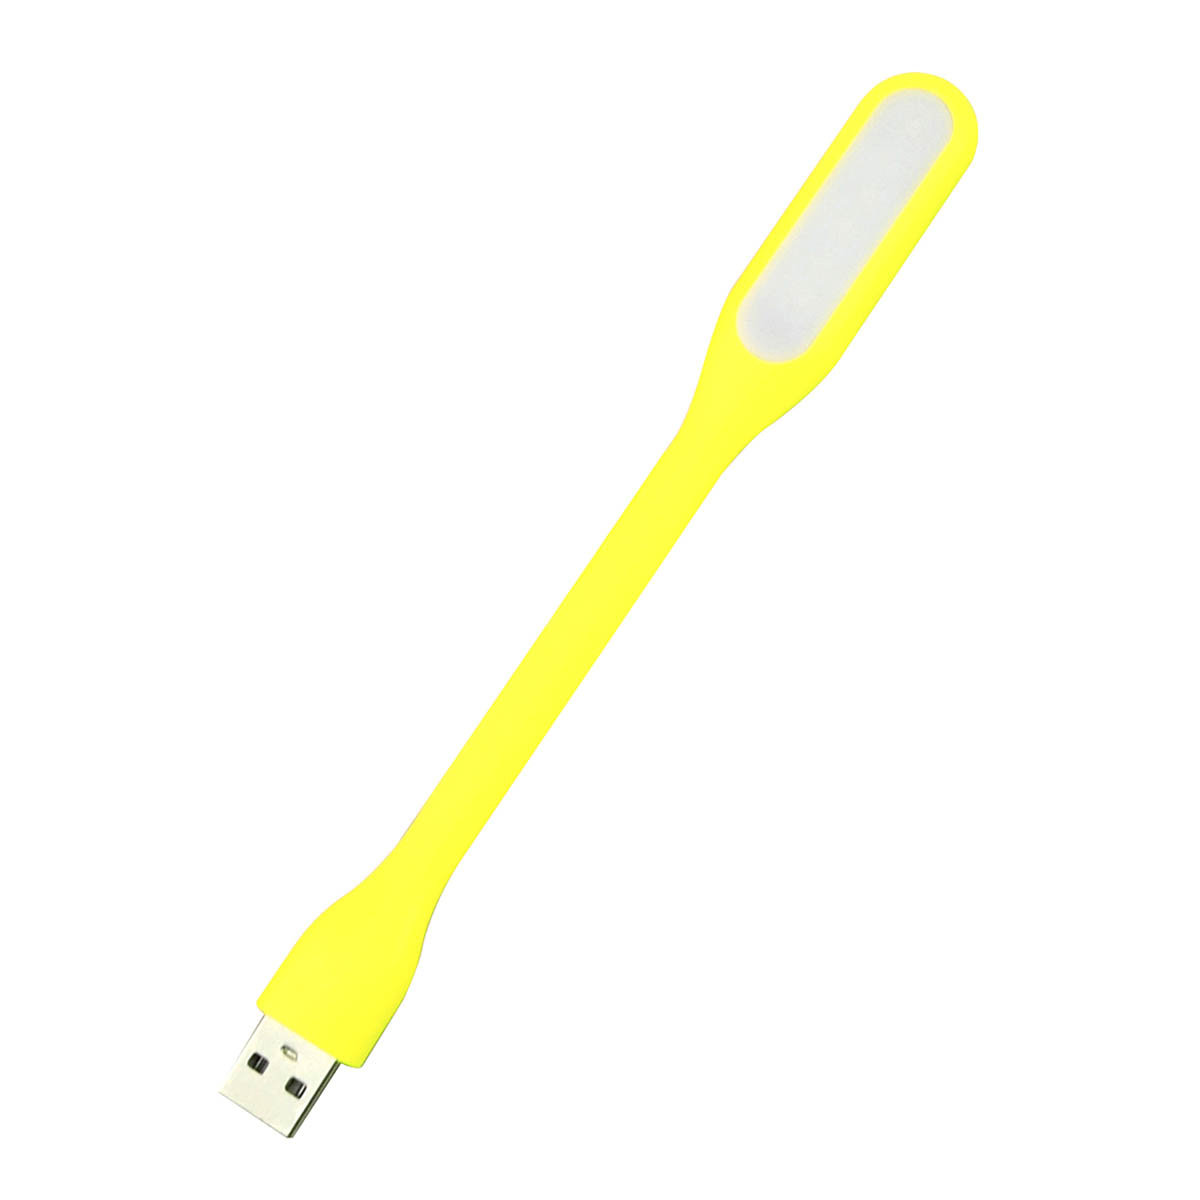 LED USB светильник, 6 диодов, длина 16.5 см, цвет желтый